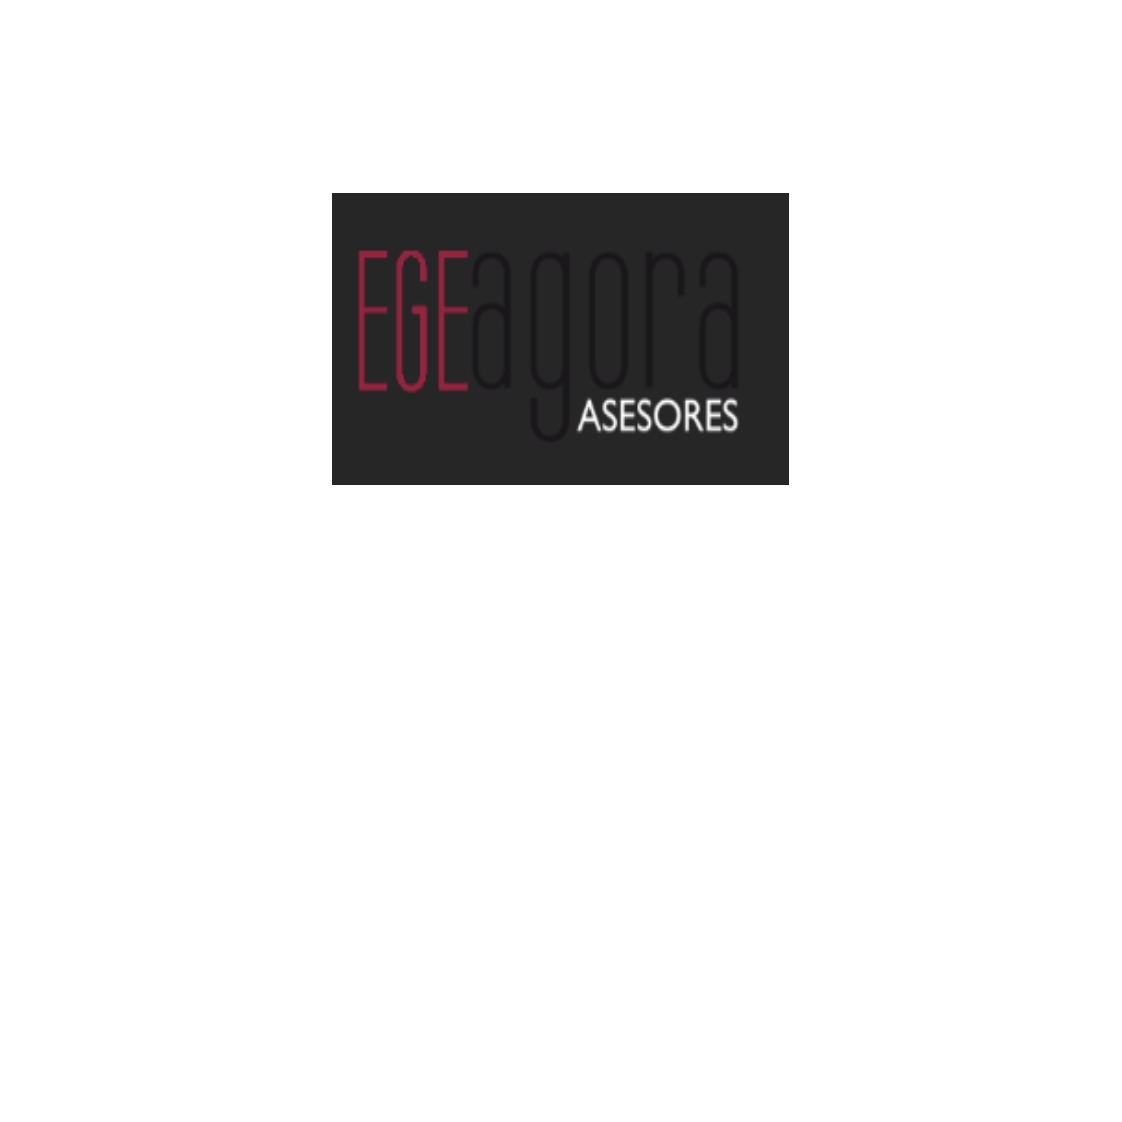 EGE AGORA ASESORES Logo